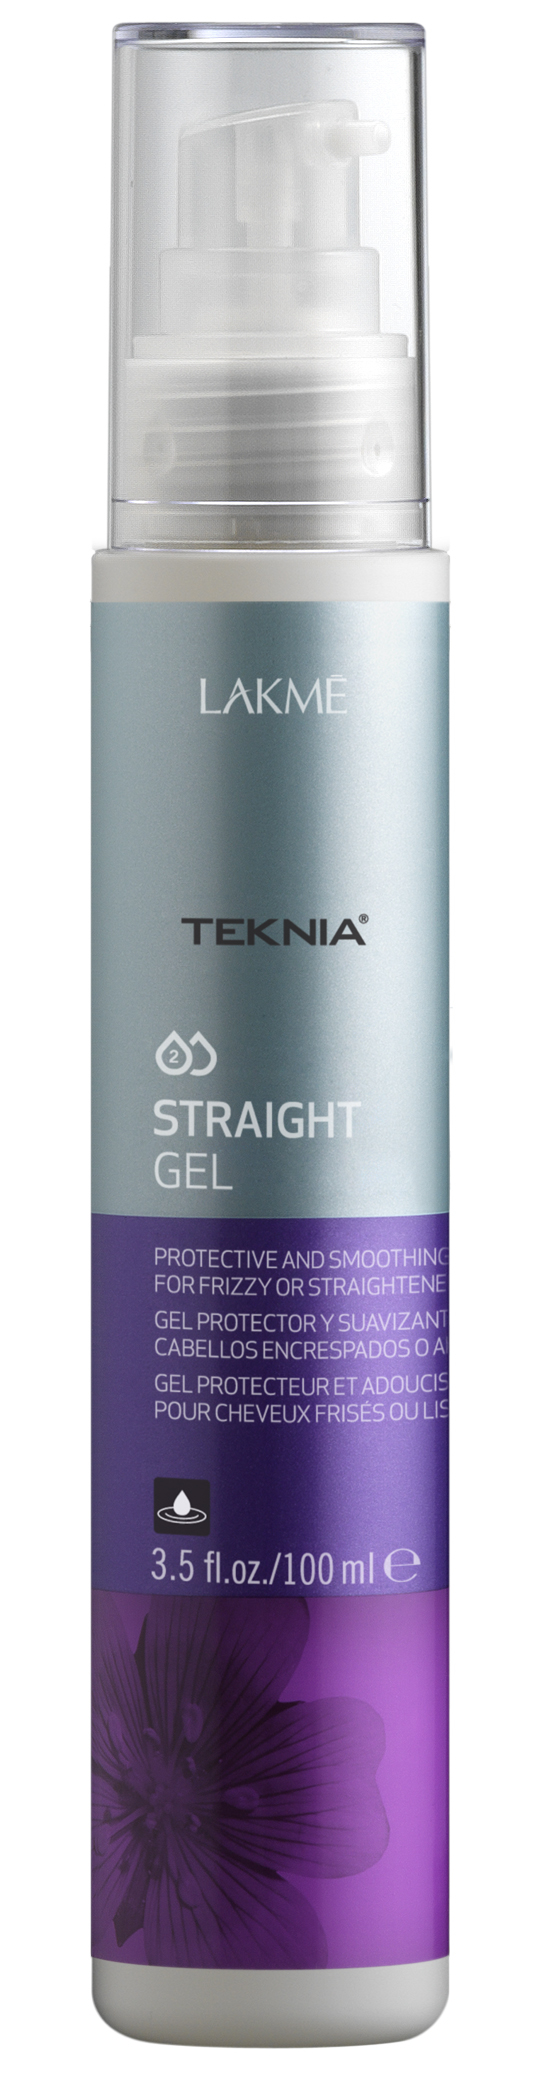 STRAIGHT GEL Гель для придания гладкости непослушным или химически выпрямленным волосам (100 мл)